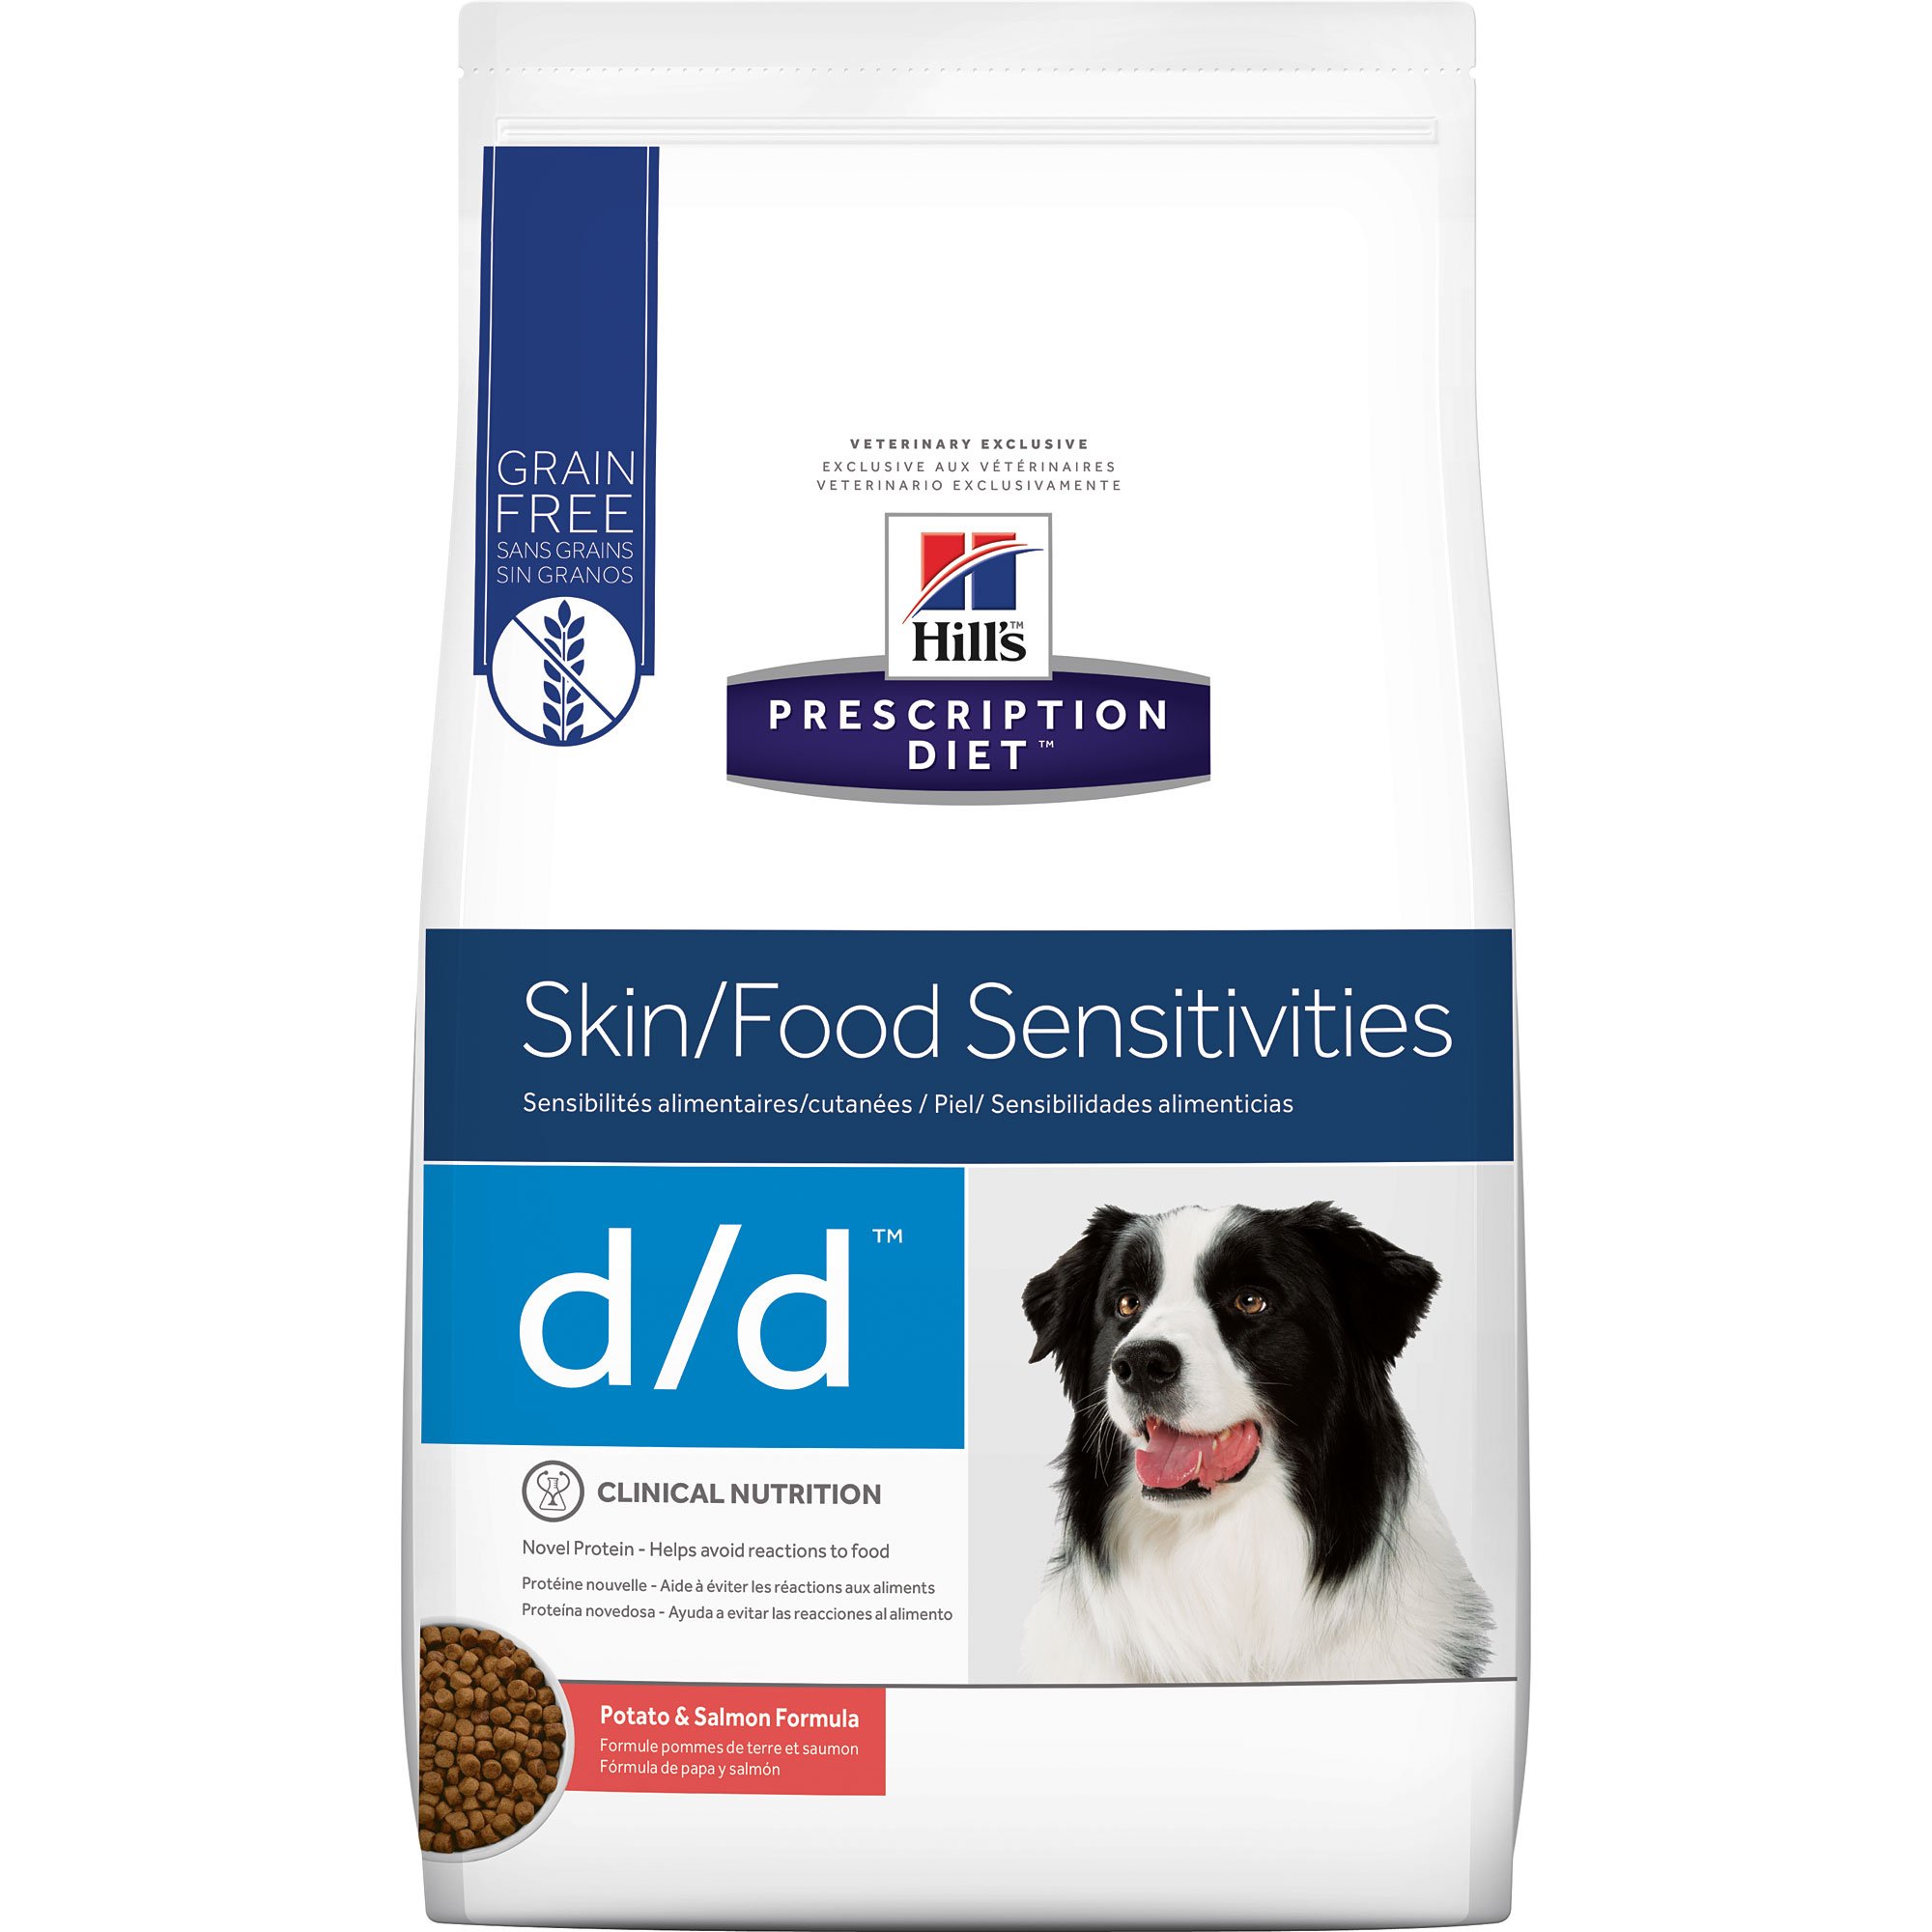 science diet grain free dog food